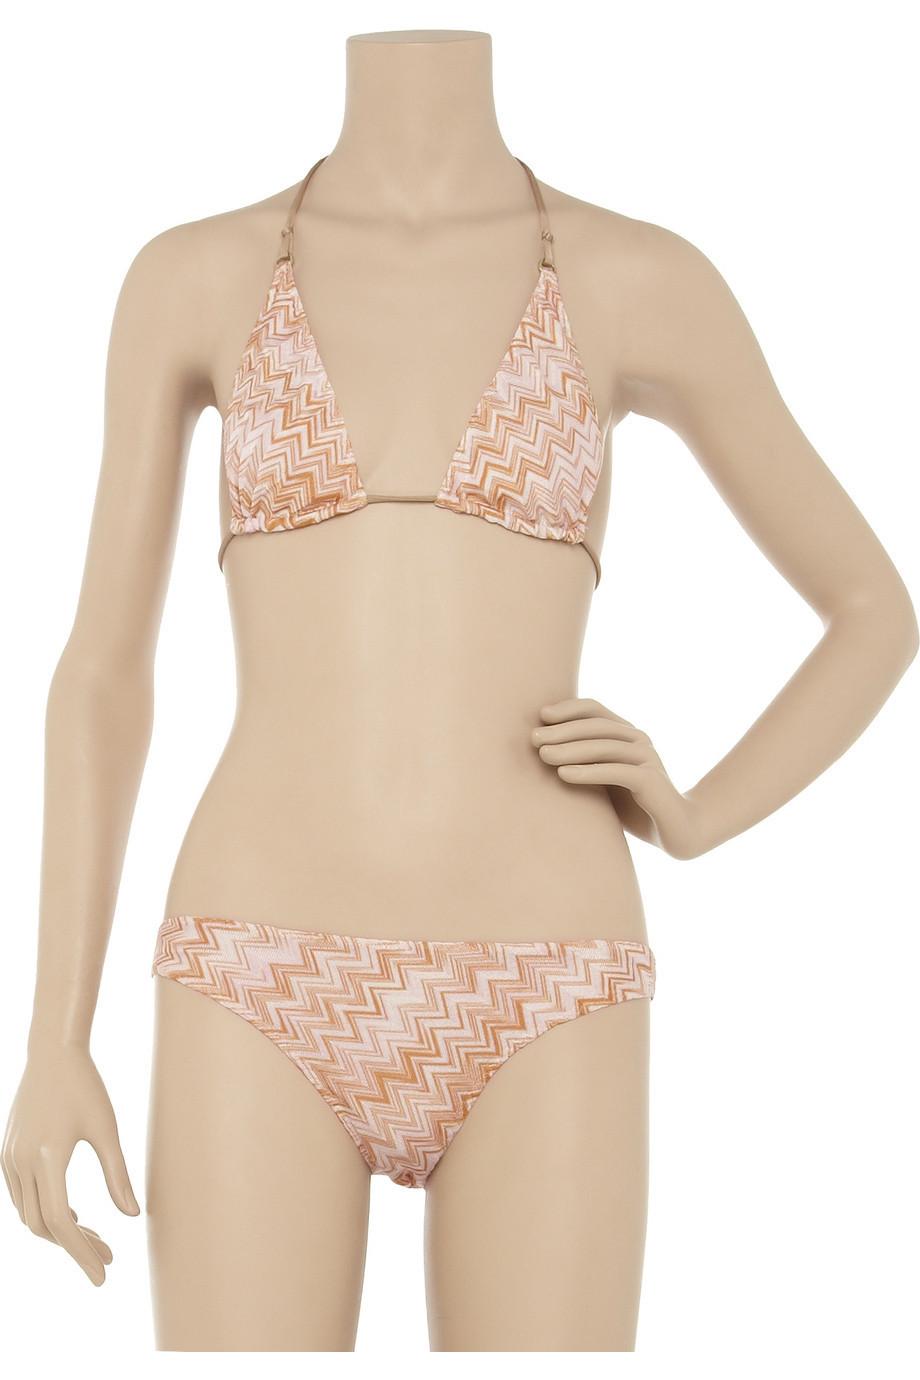 Dieser umwerfende Bikini von Missoni ist ein von den 70er Jahren inspiriertes Stück für den Pool. Kombinieren Sie diesen klassischen Häkelstrick-Bikini mit dem passenden Kaftan für einen wunderbar gewagten Urlaubslook.

Zweiteiliger